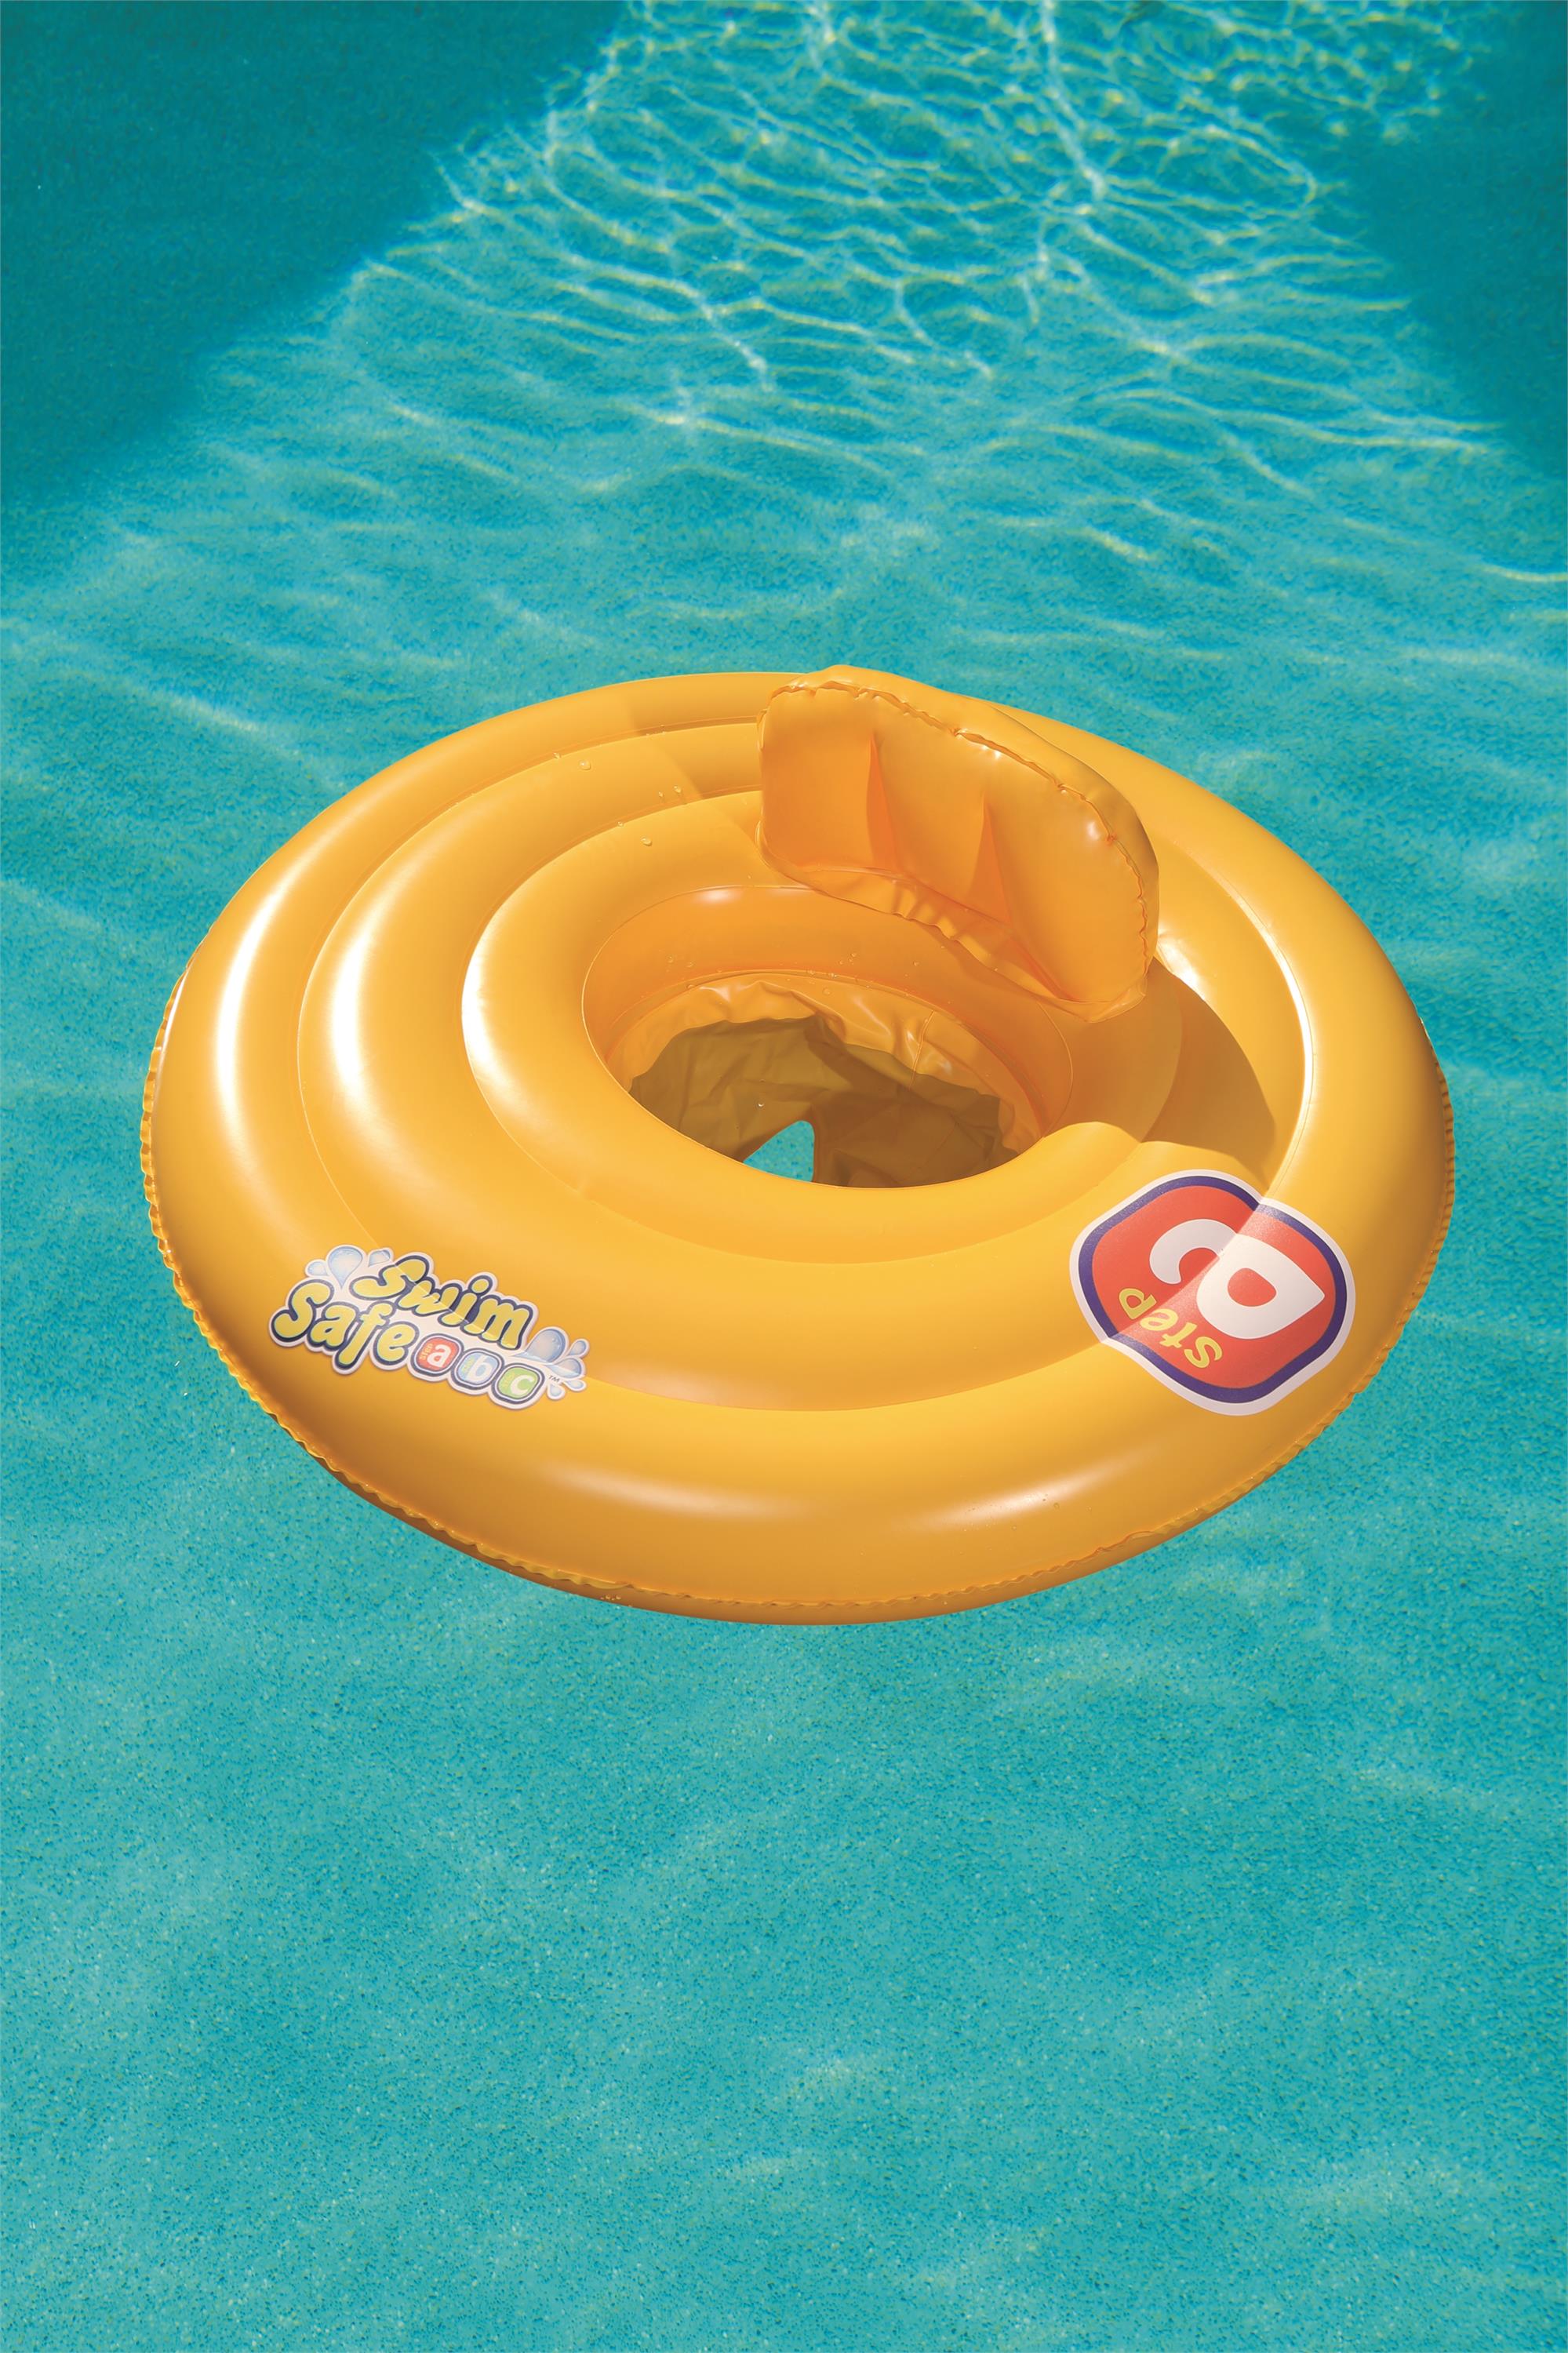 Swim Safe™ Φ27"/Φ69cm 尿布式婴儿座圈详情图5